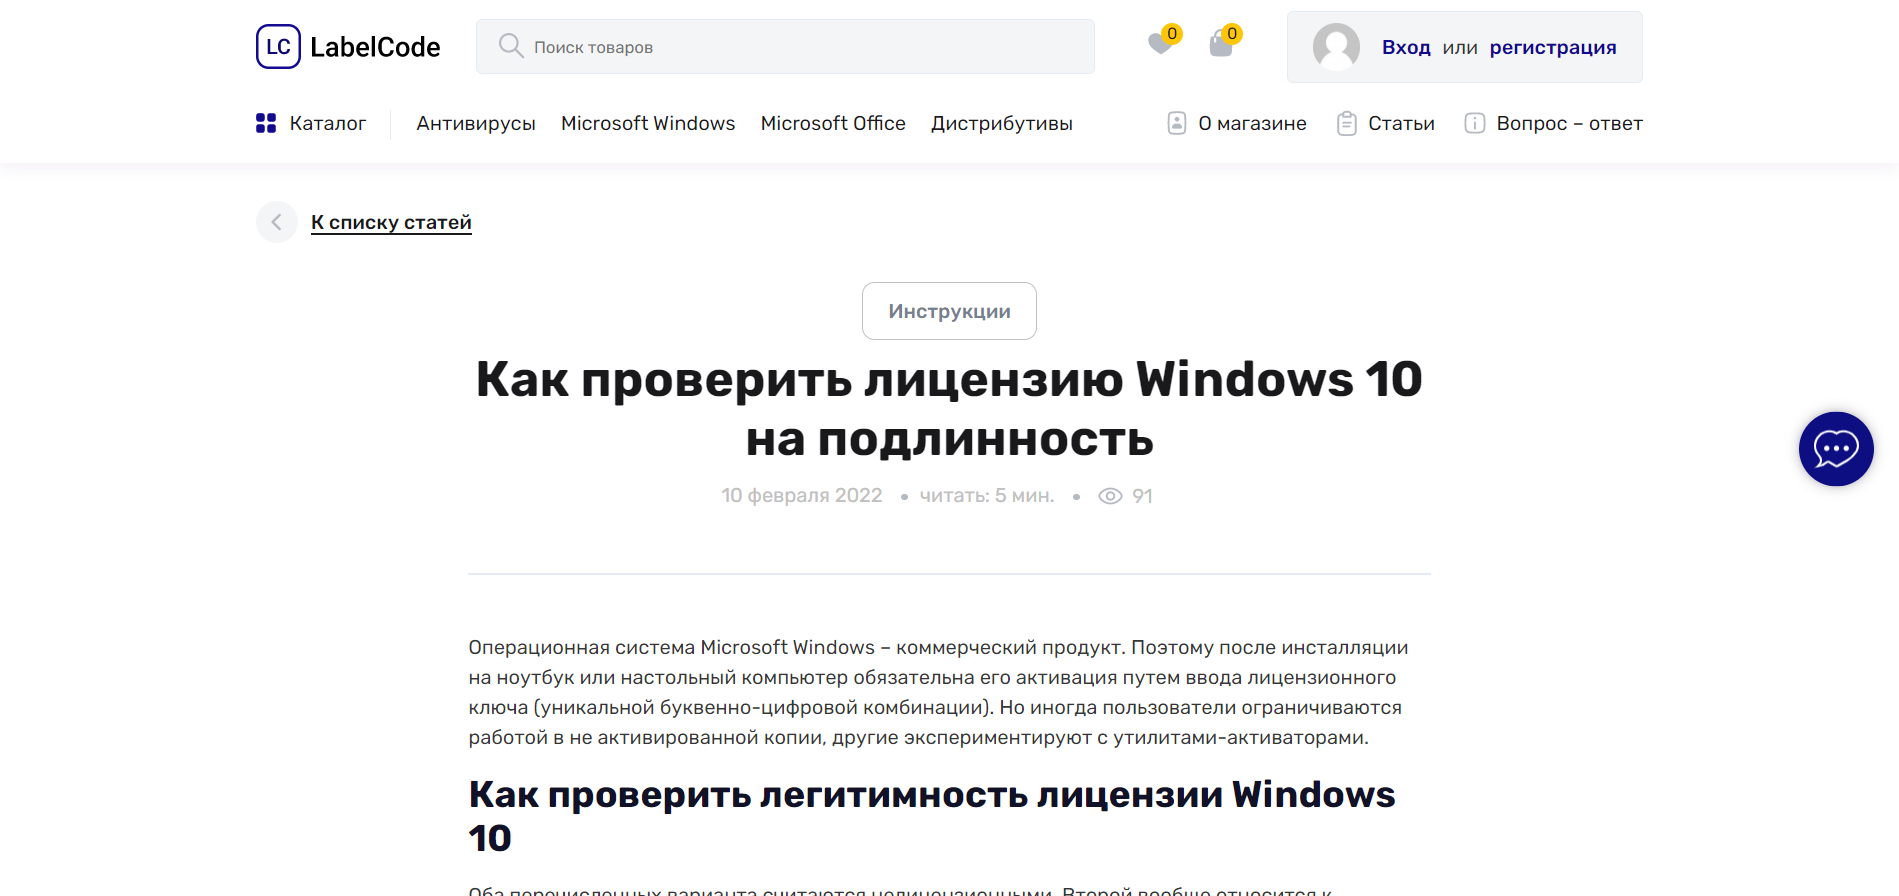 Как проверить лицензию Windows 10 на подлинность